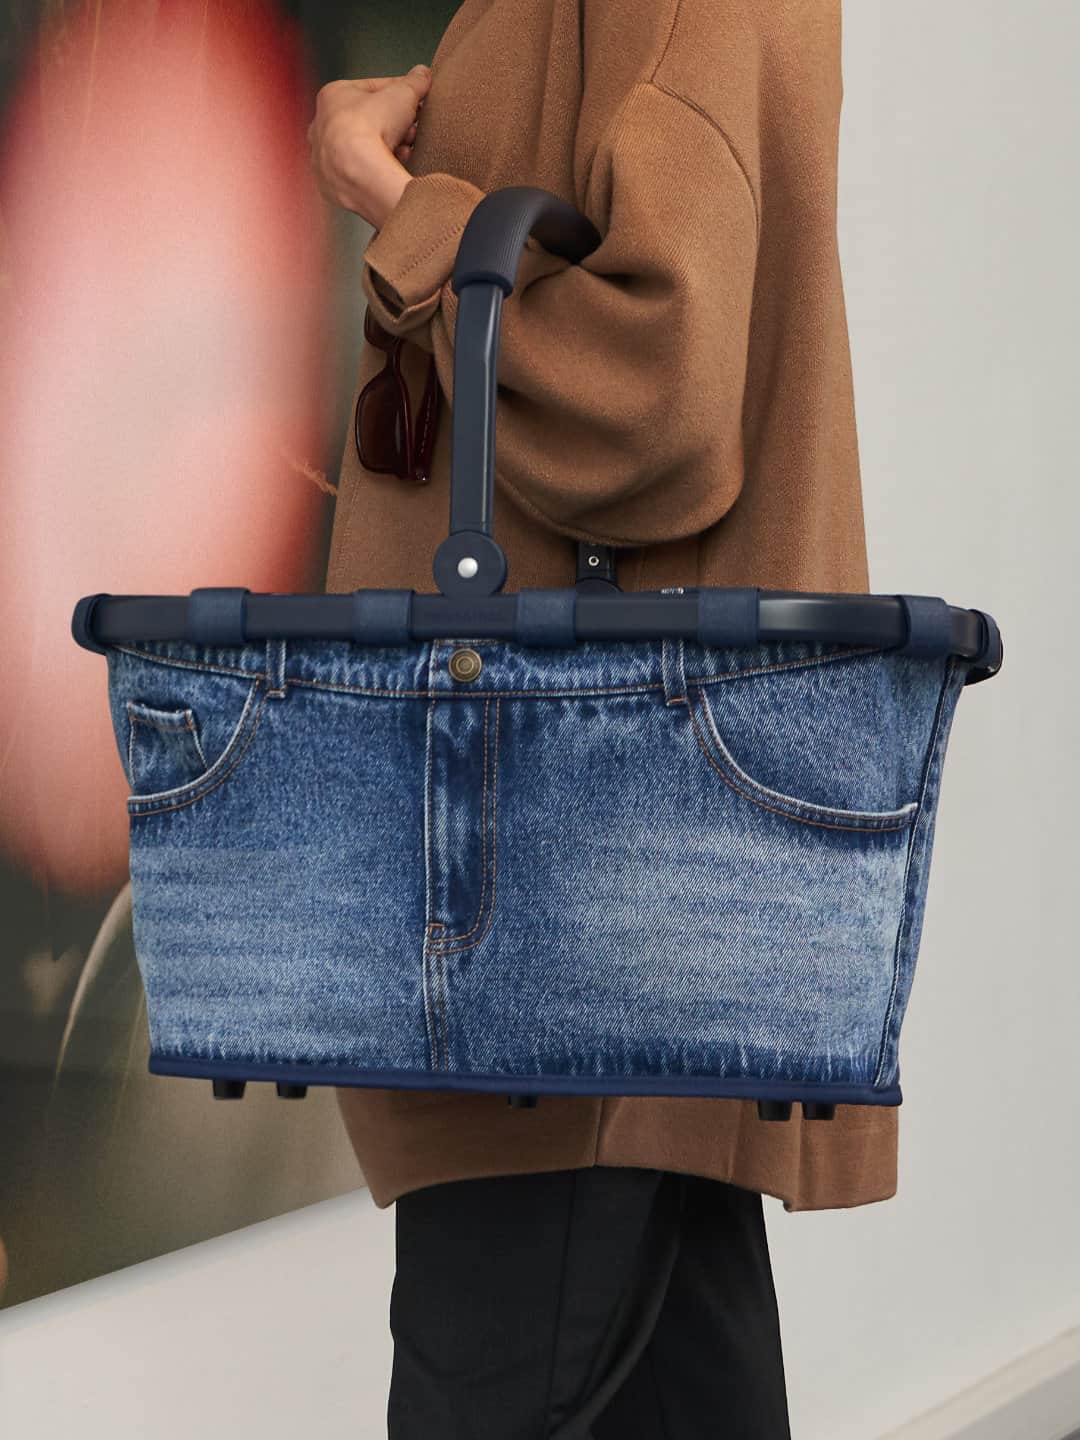 http://flinterhoff.de/cdn/shop/products/Reisenthel-carrybag-frame-jeans-classic-blue-Aktionsbild.jpg?v=1675103697